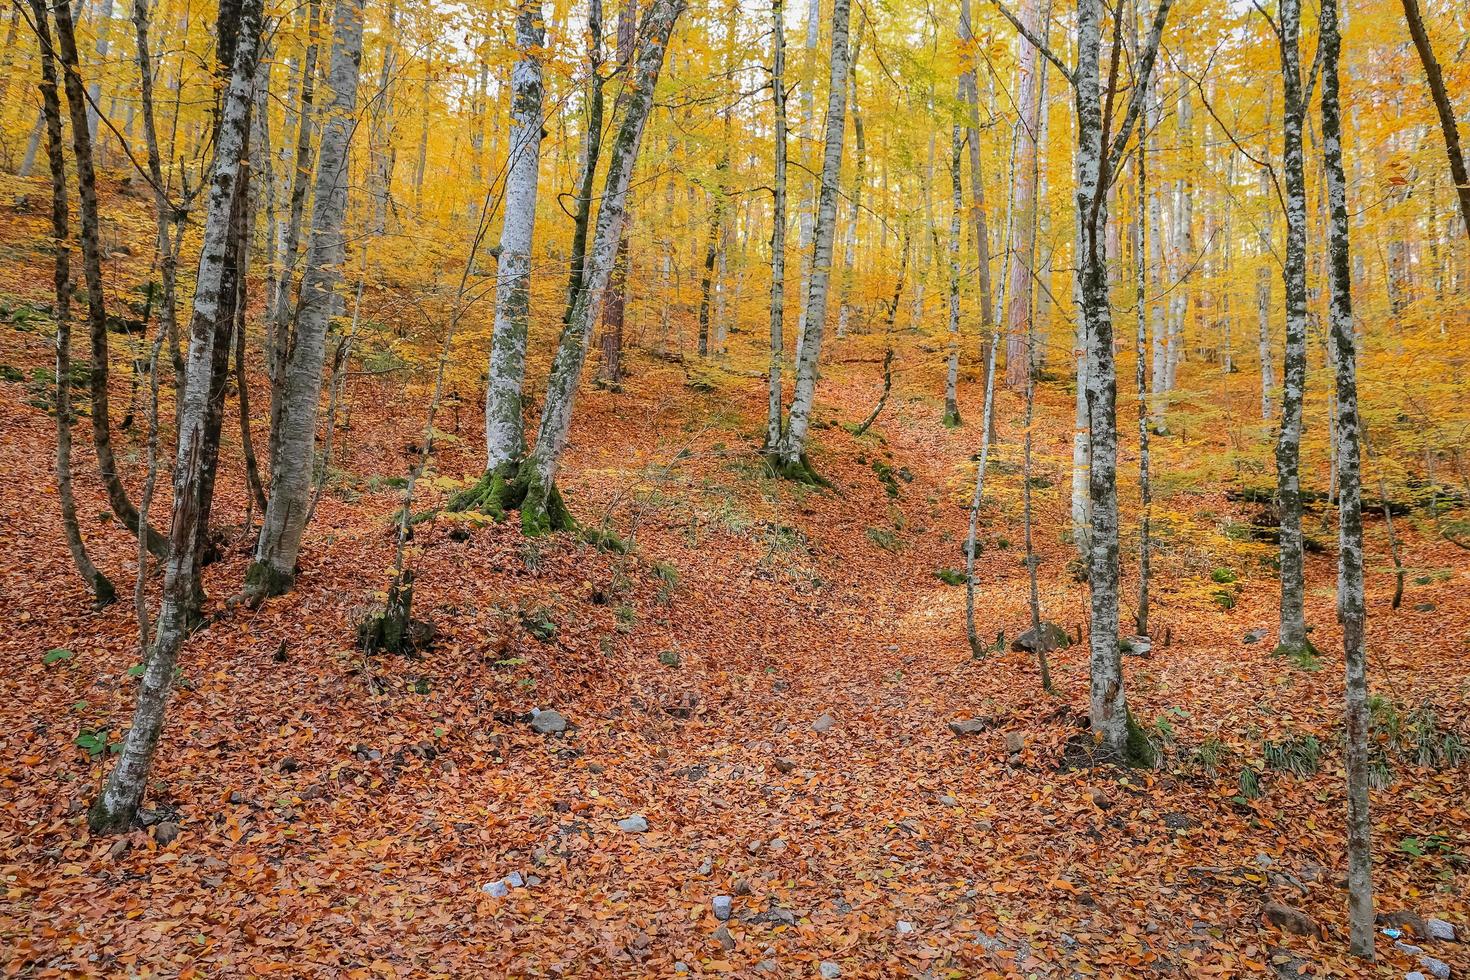 skog i Yedigoller nationalpark, Turkiet foto